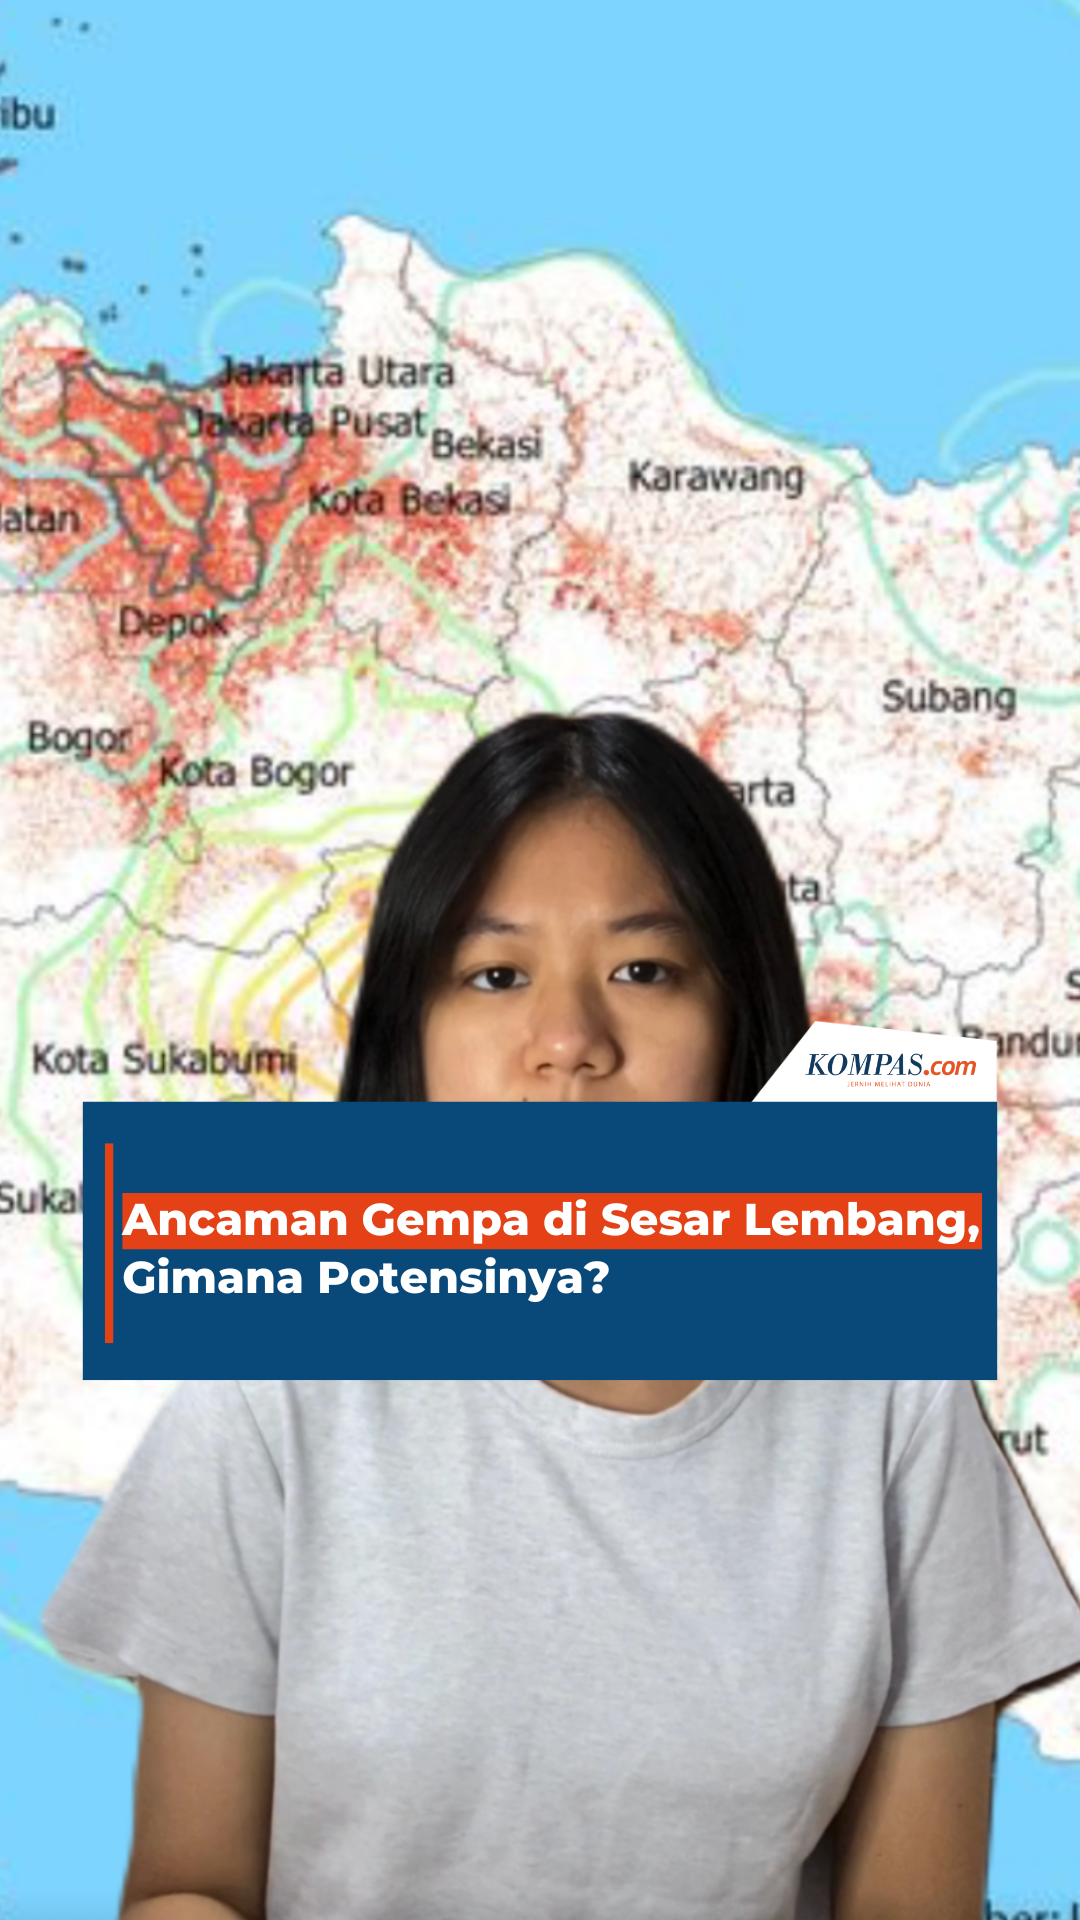 Ancaman Gempa di Sesar Lembang, Gimana Potensinya?